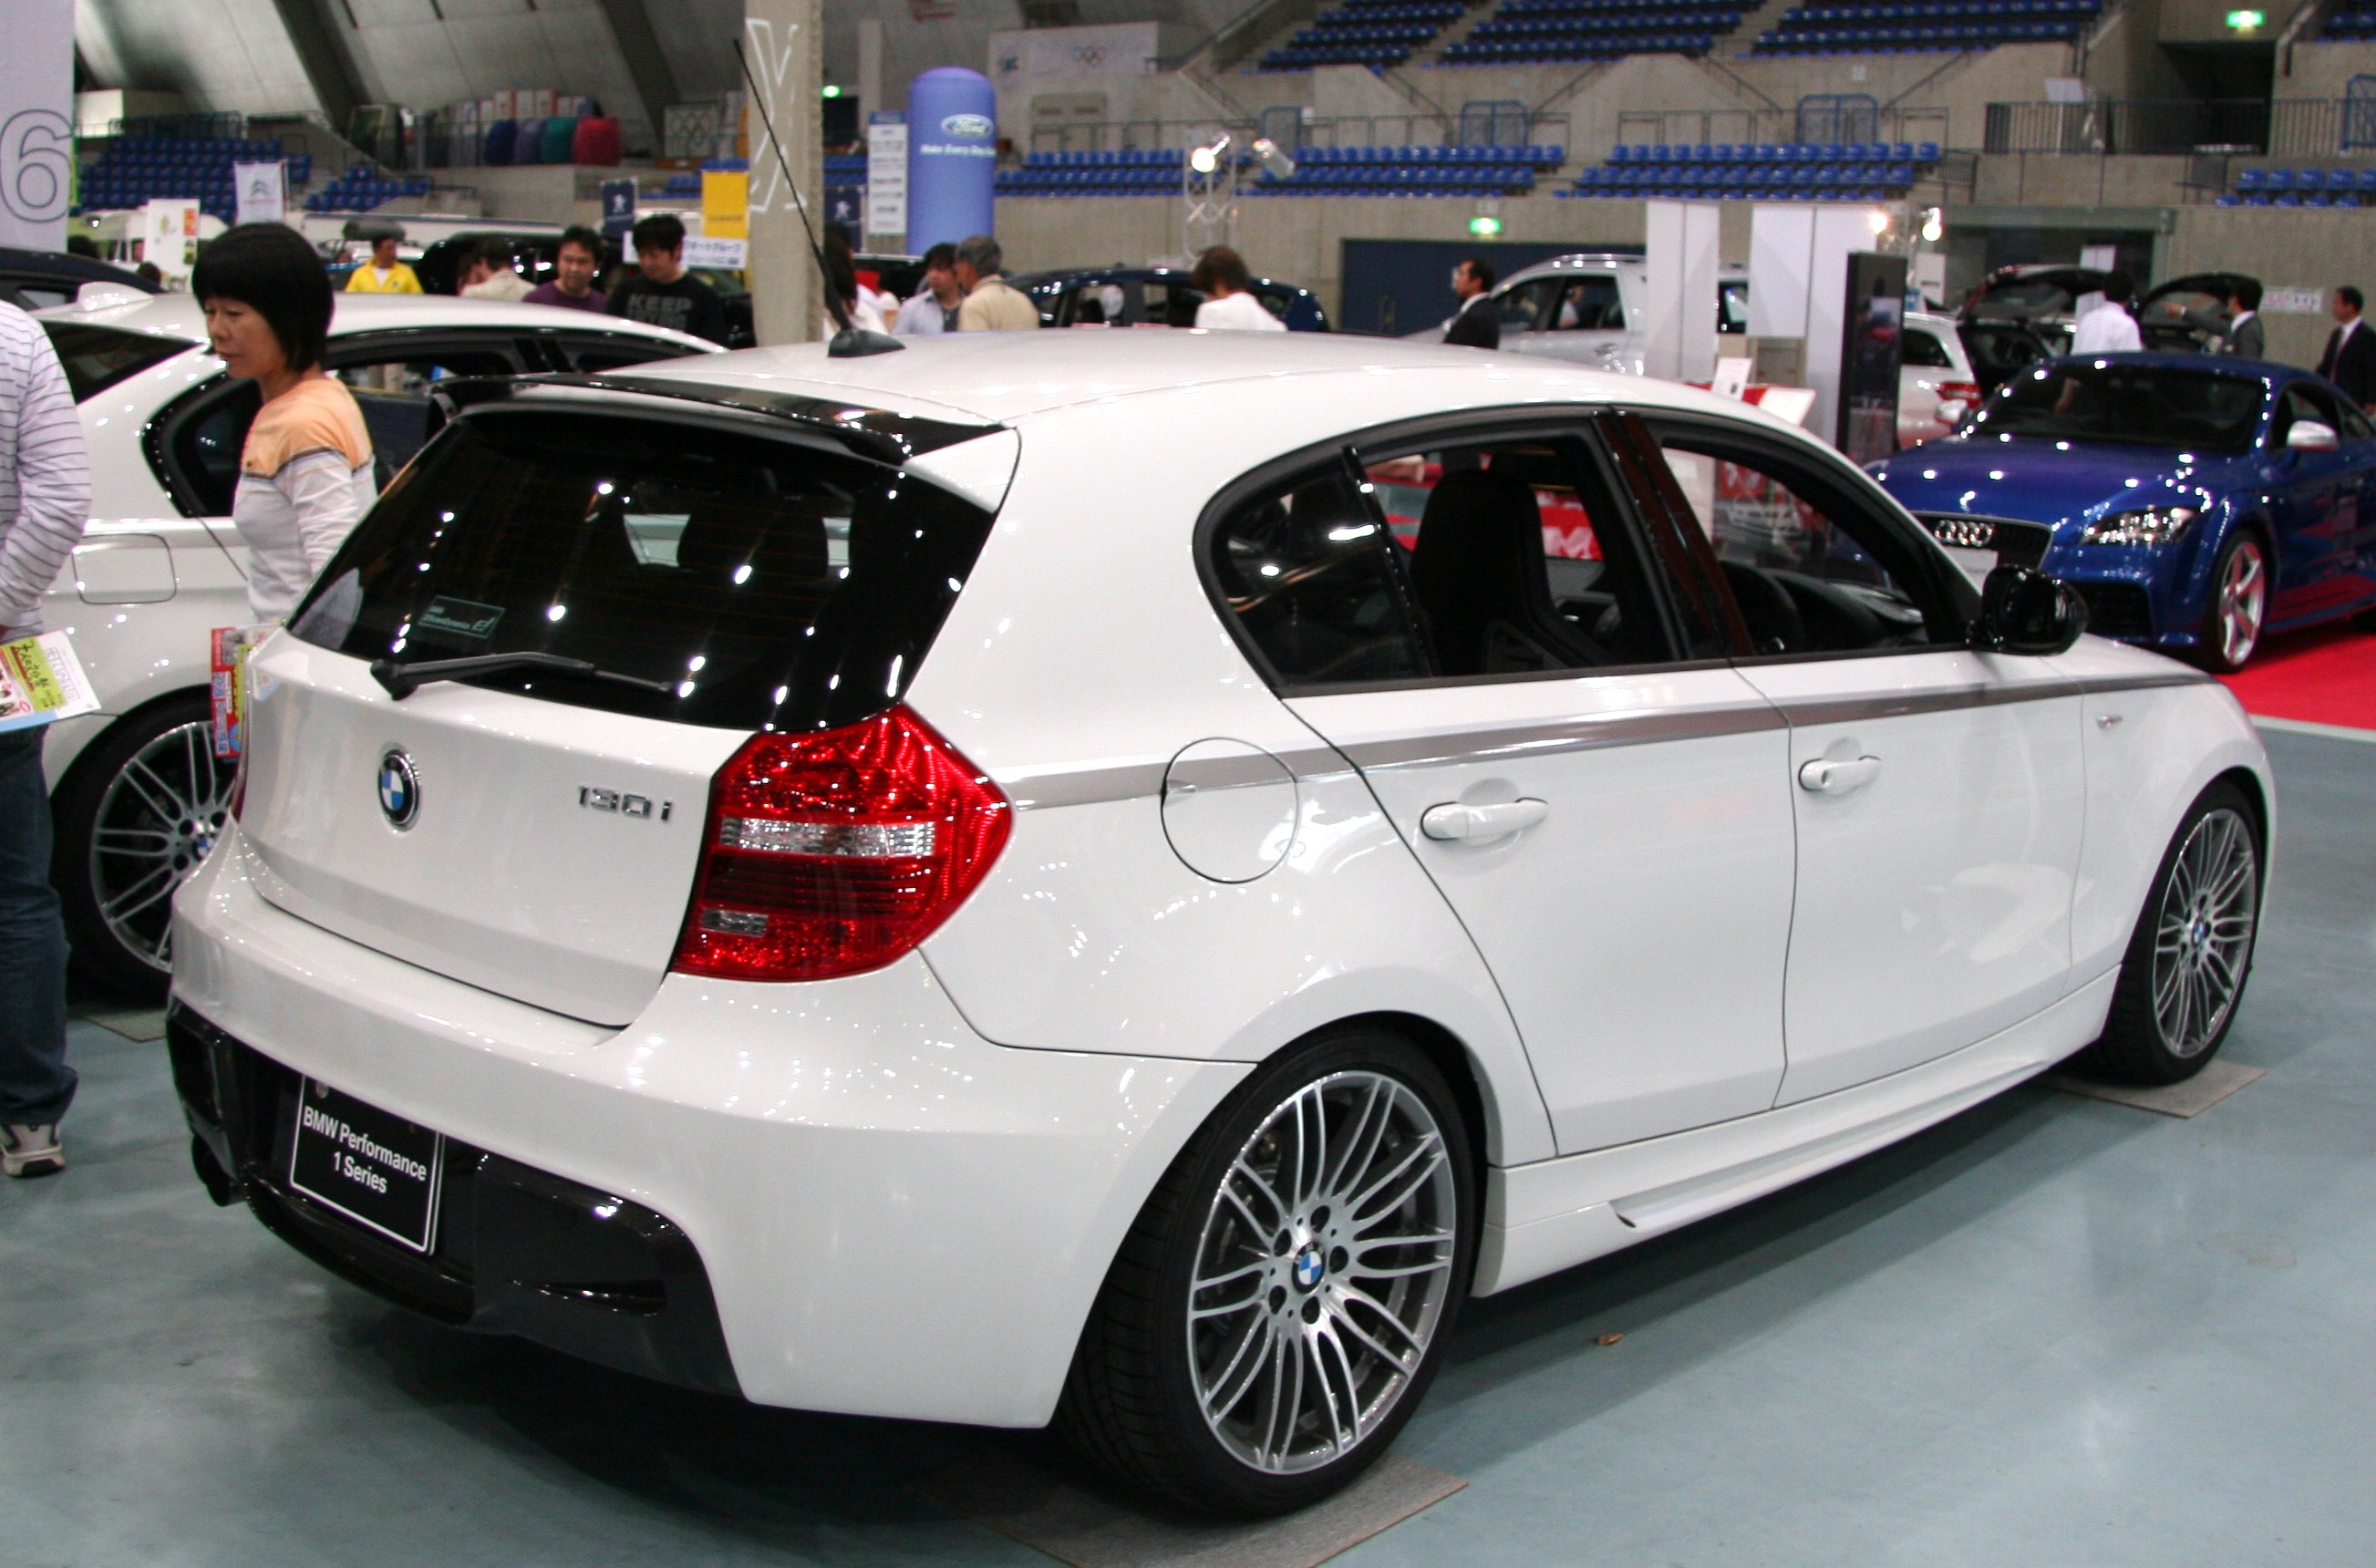 Dossier: BMW 130i arrière.jpg - Wikimedia Commons